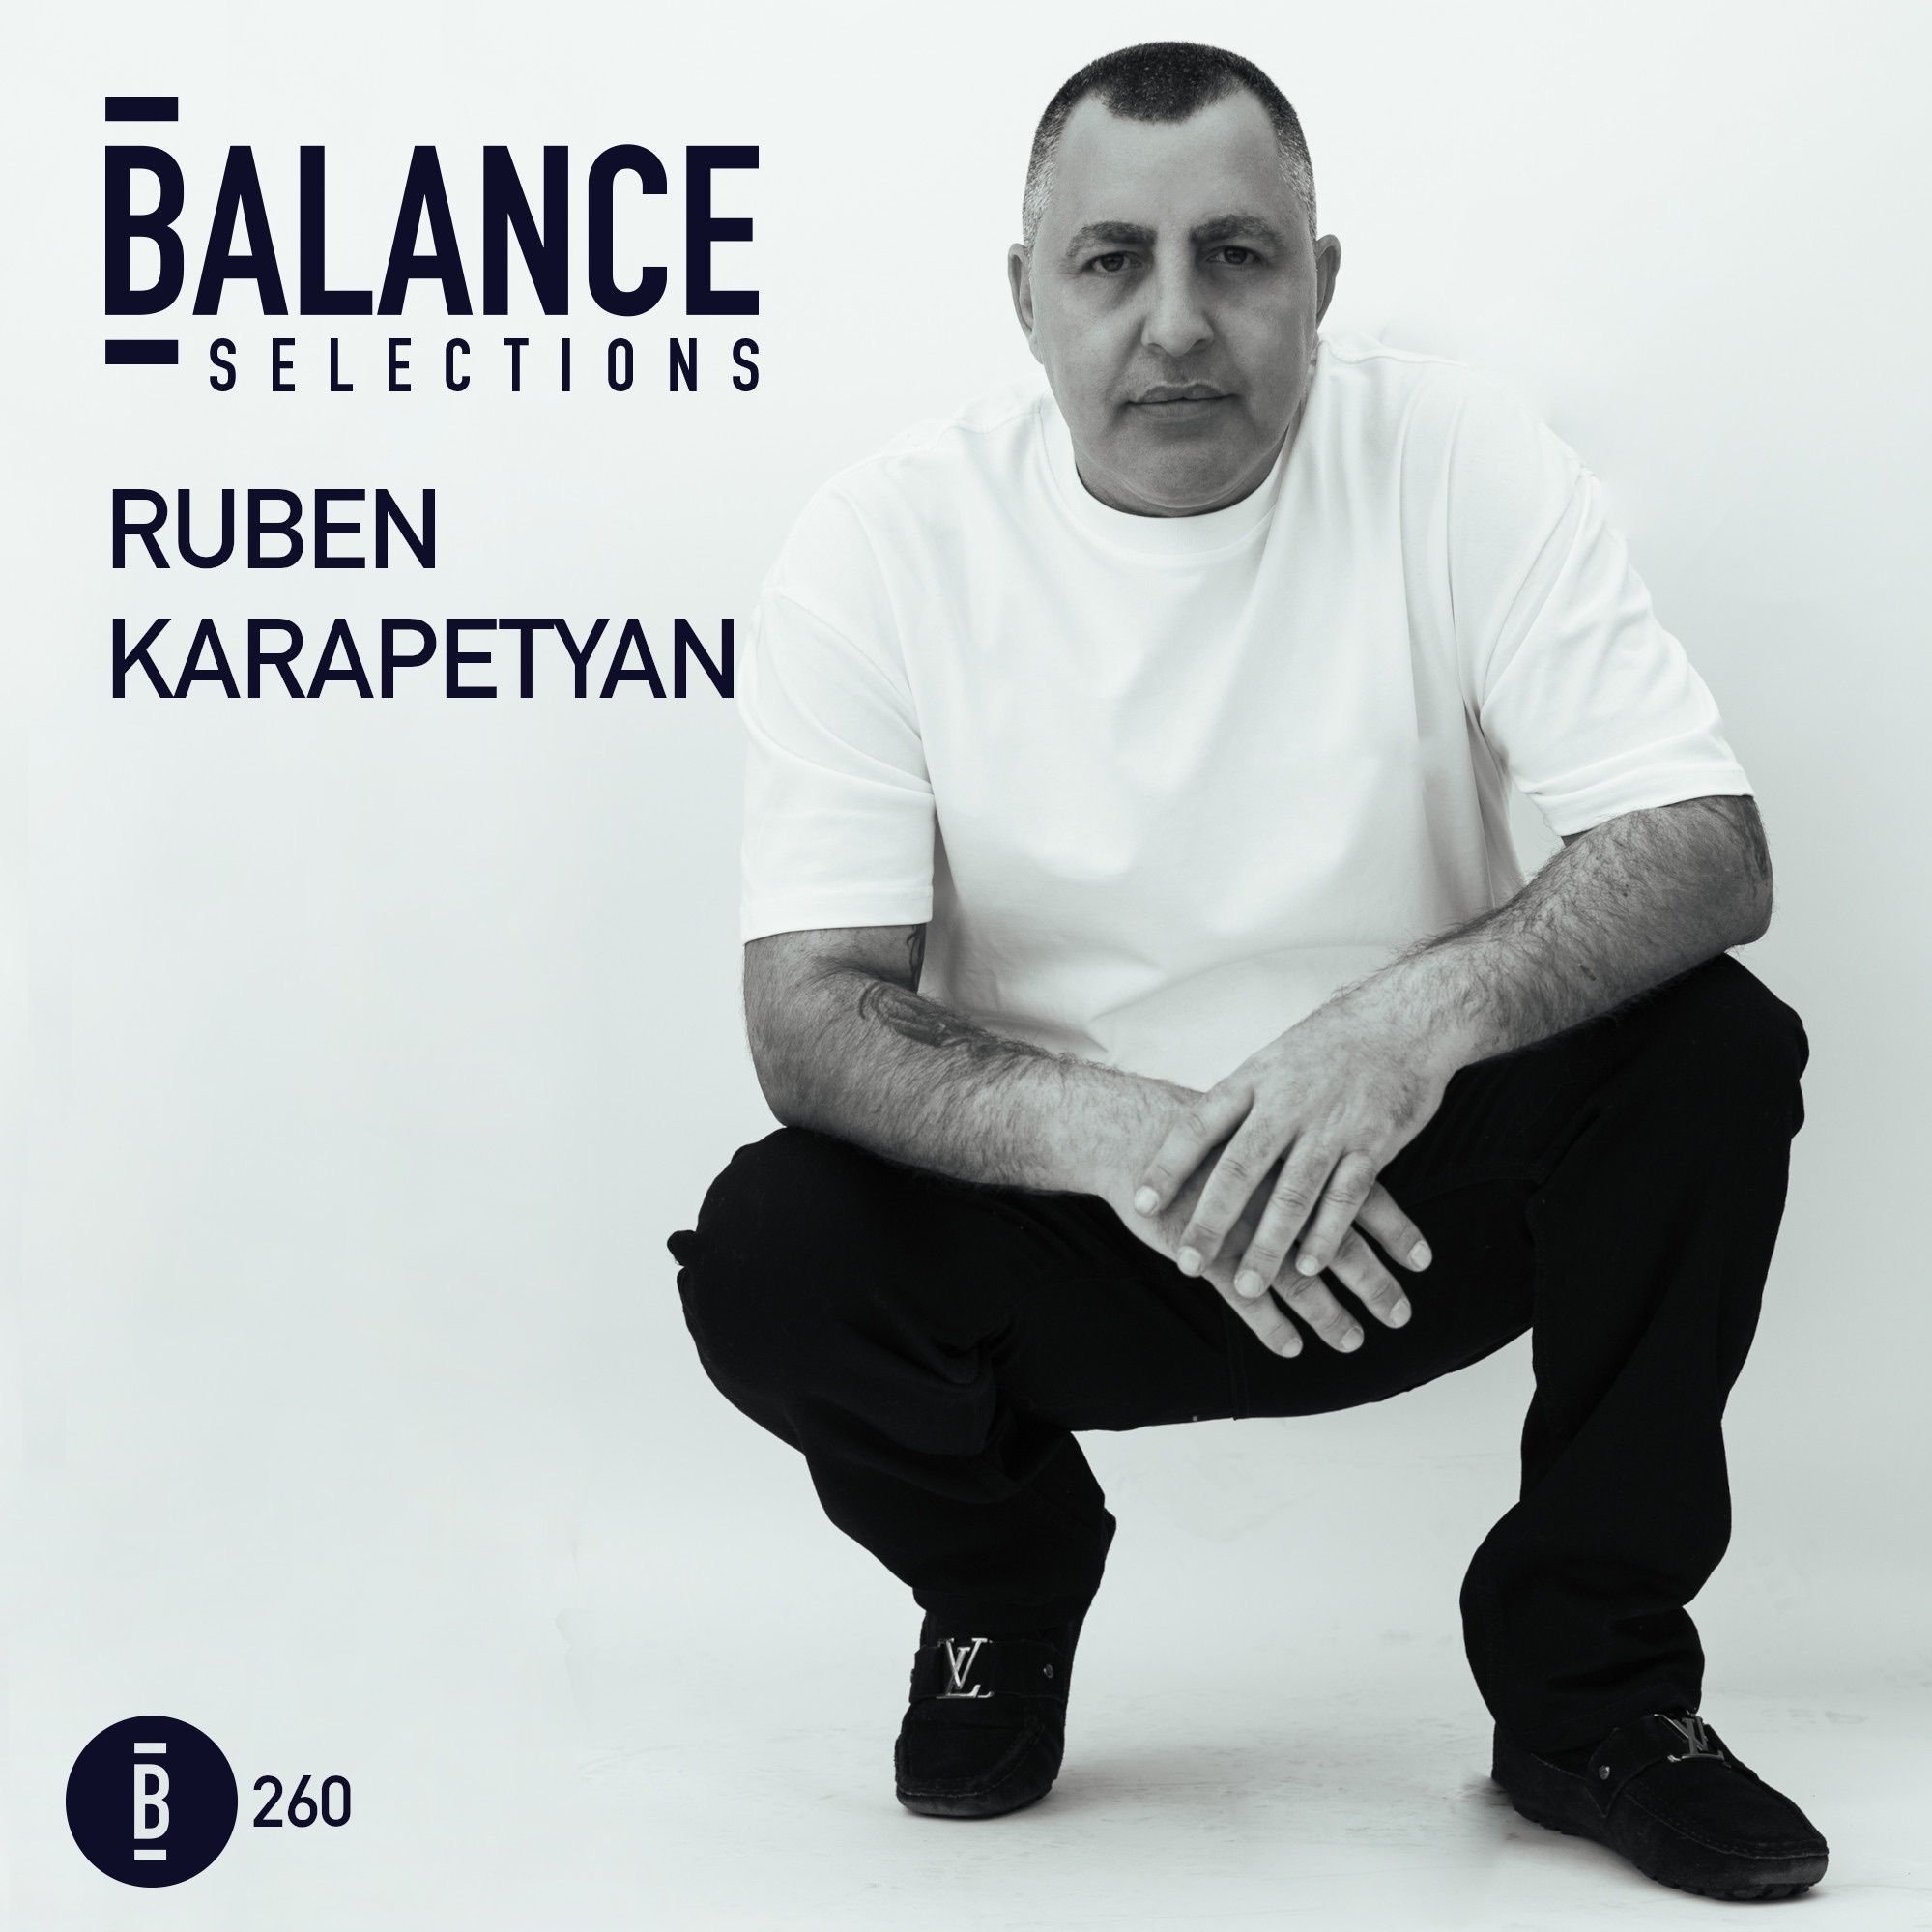 Stáhnout! Balance Selections 260 - Ruben Karapetyan